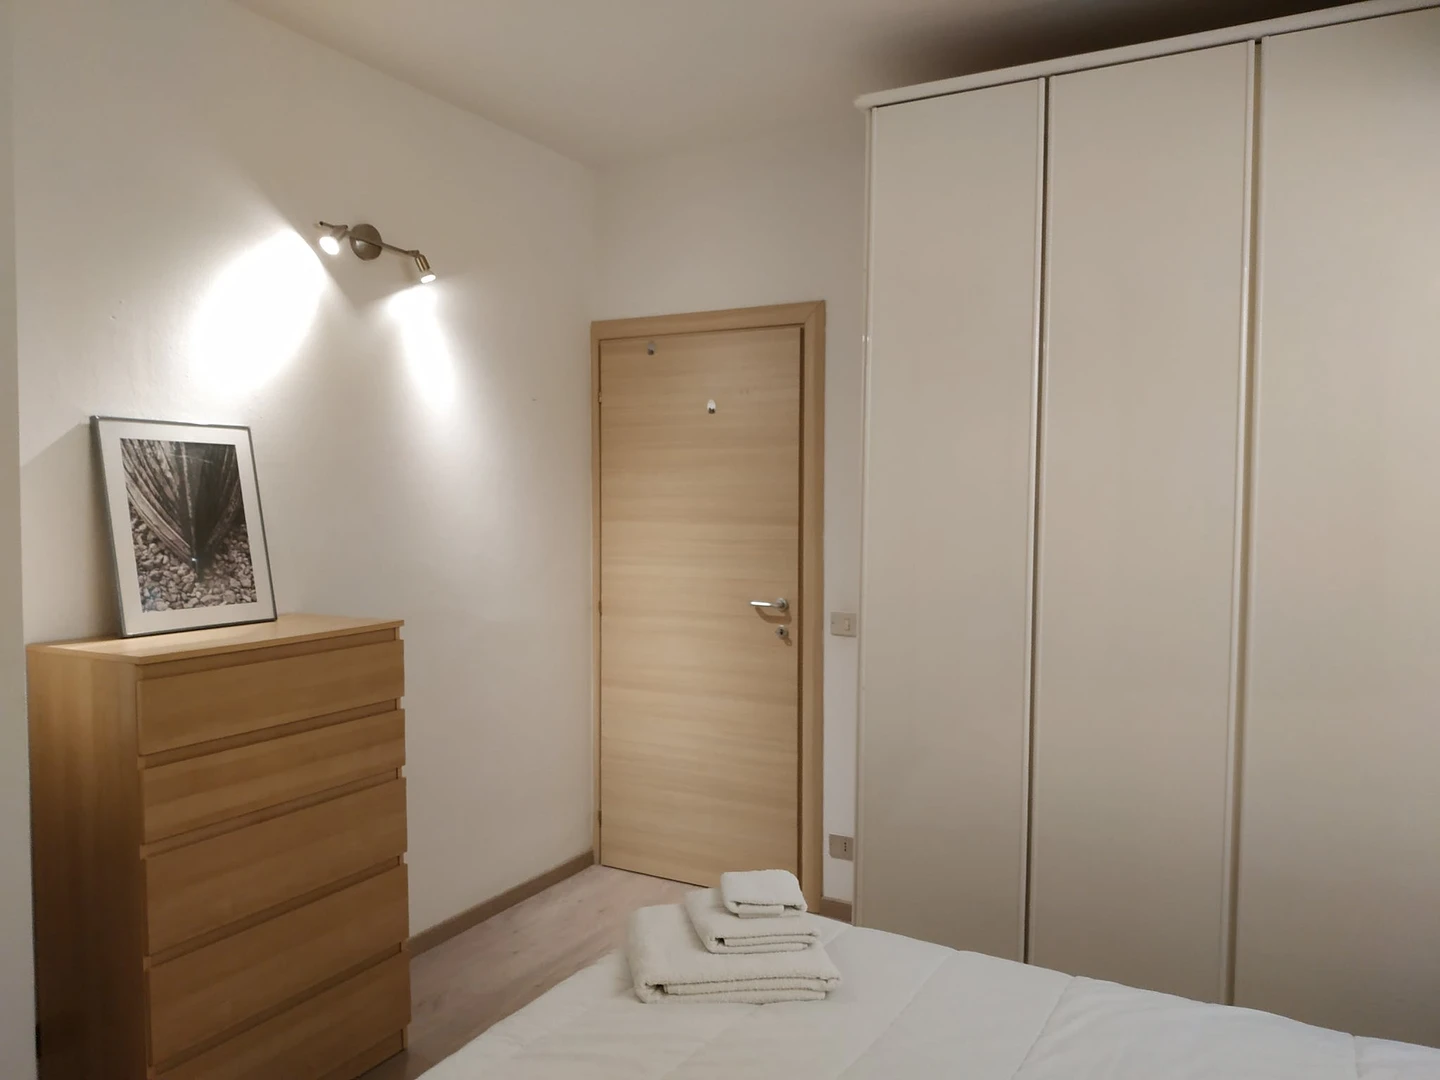 Apartamento totalmente mobilado em Trento